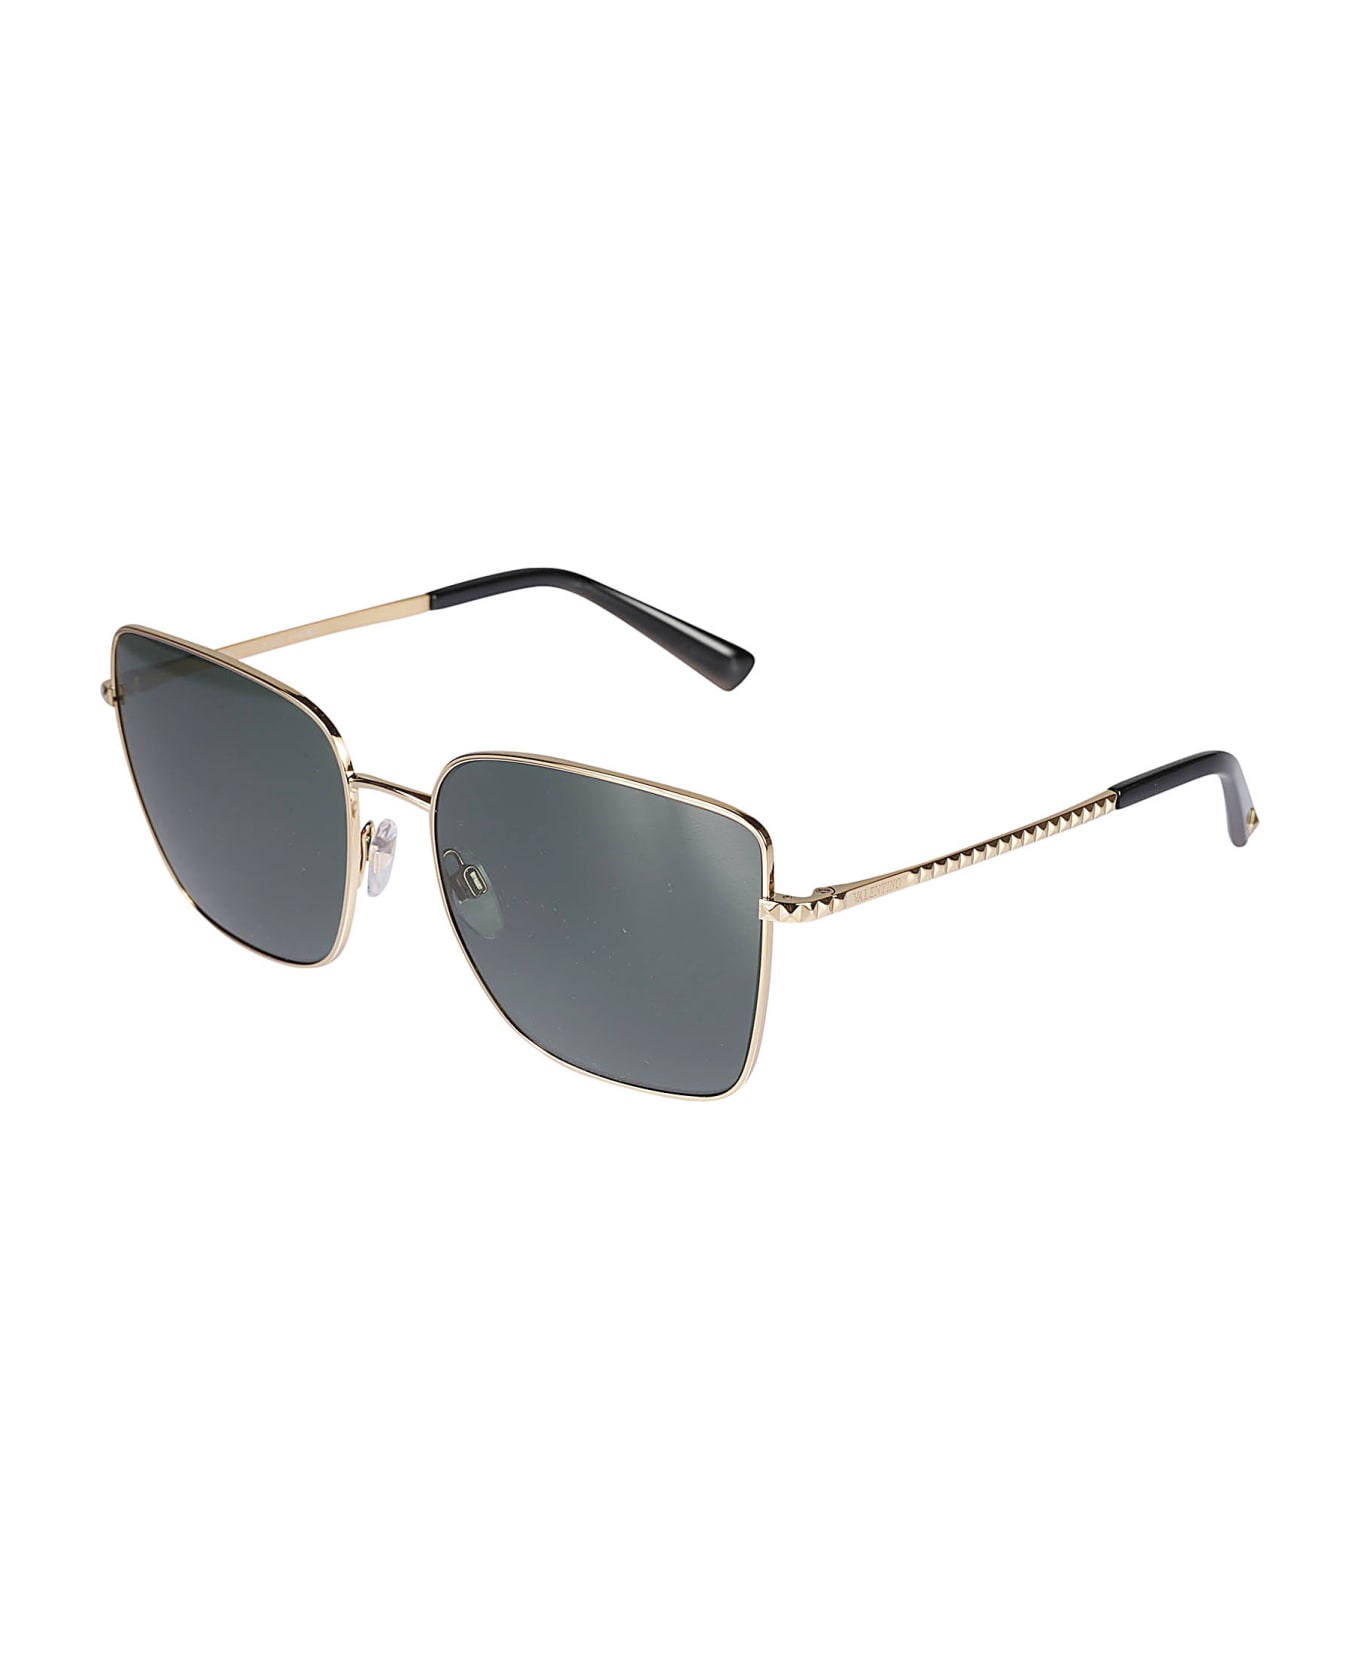 Valentino Sole300271 Sunglasses - Nero